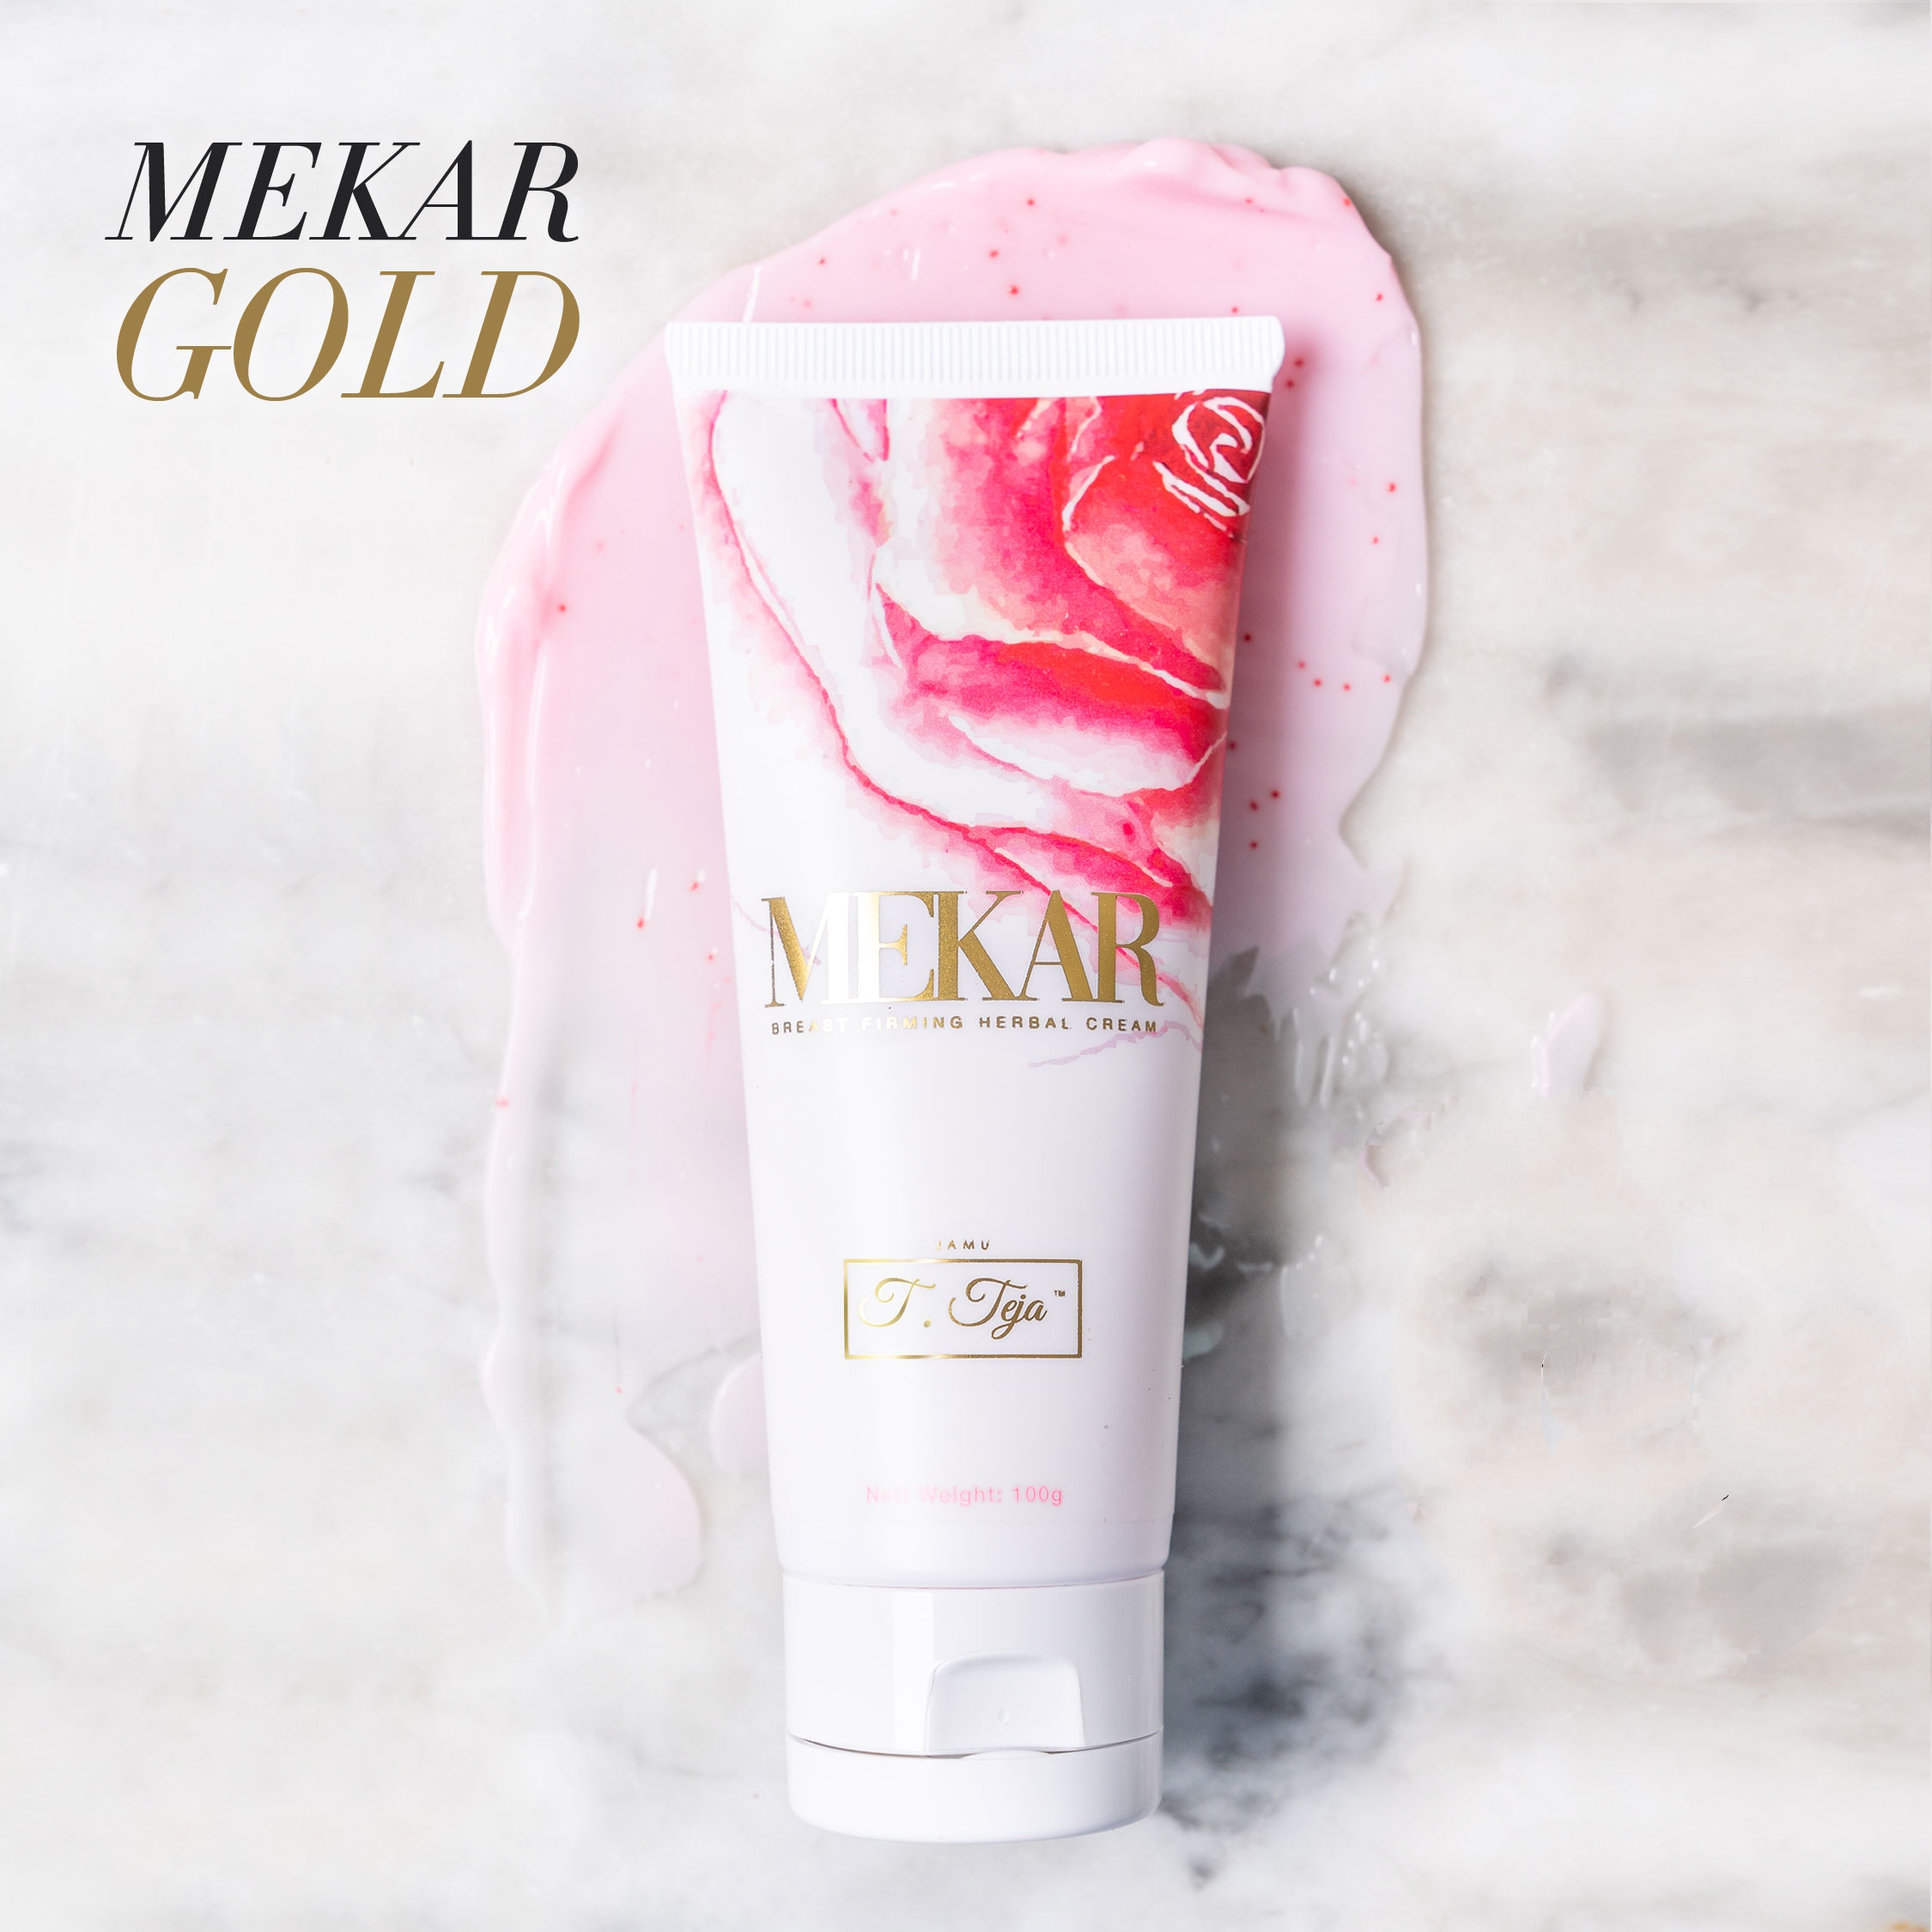 Mekar Gold